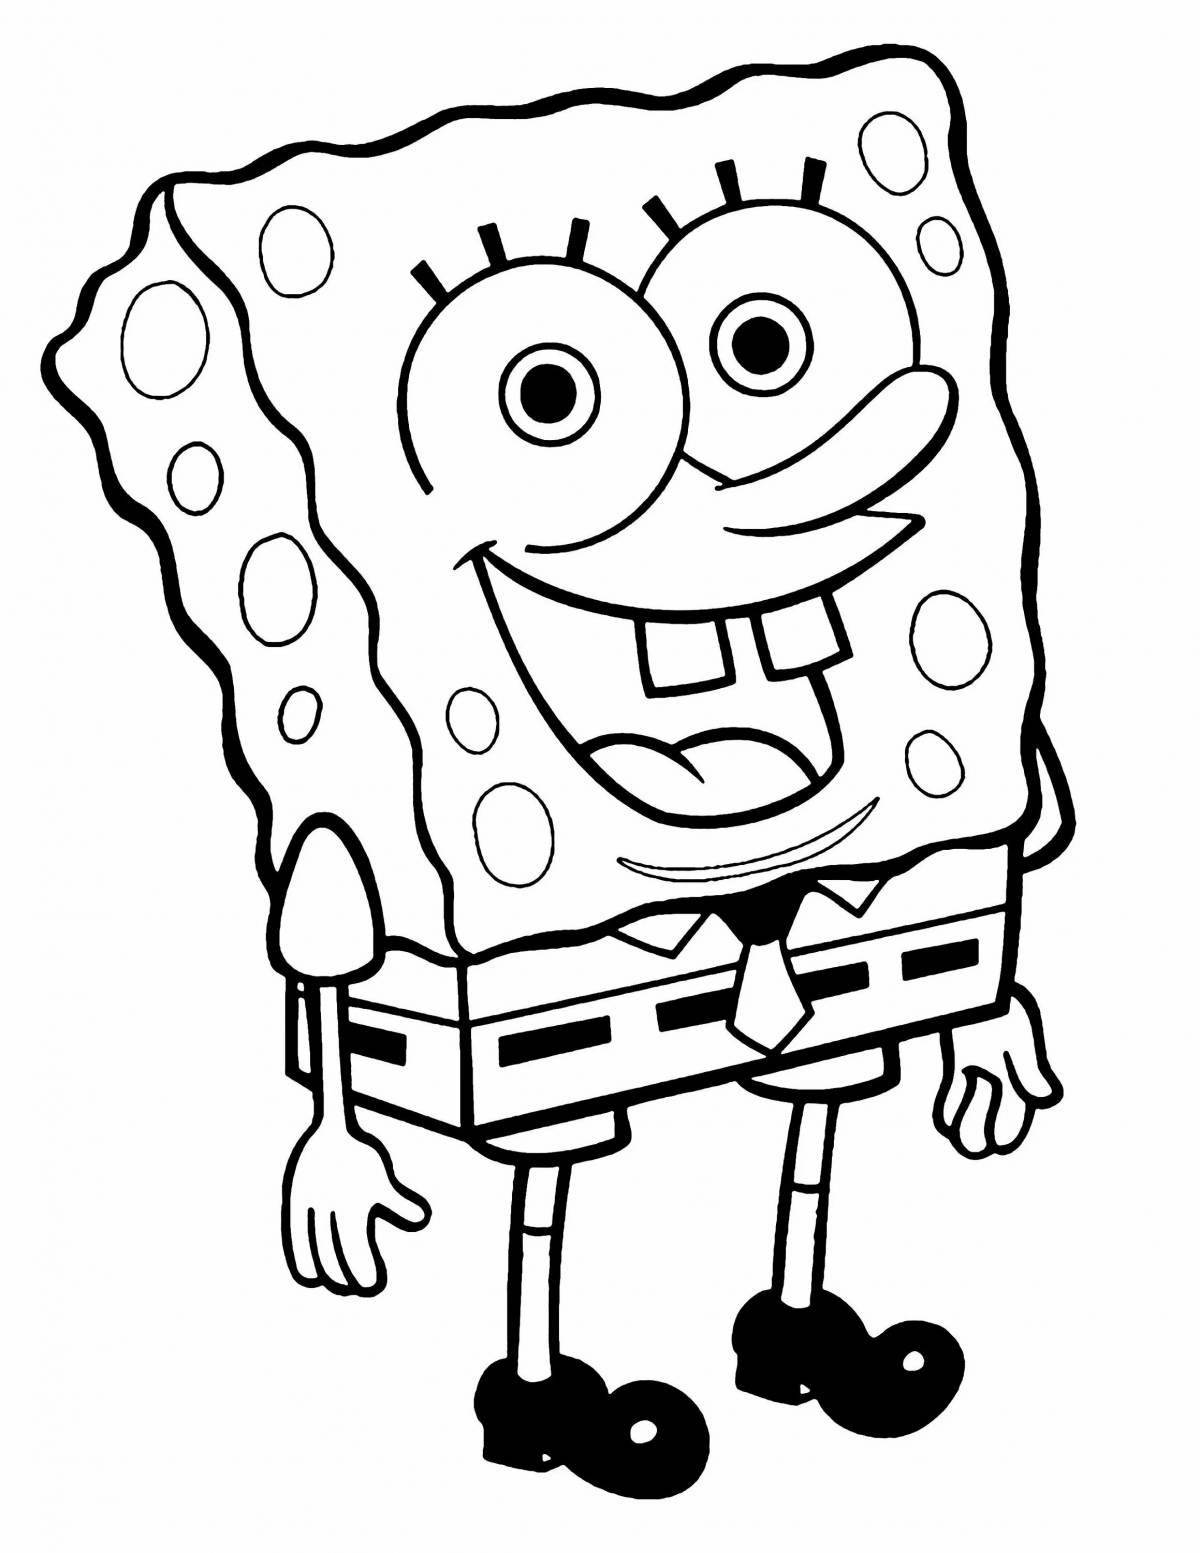 Fun coloring spongebob drawing